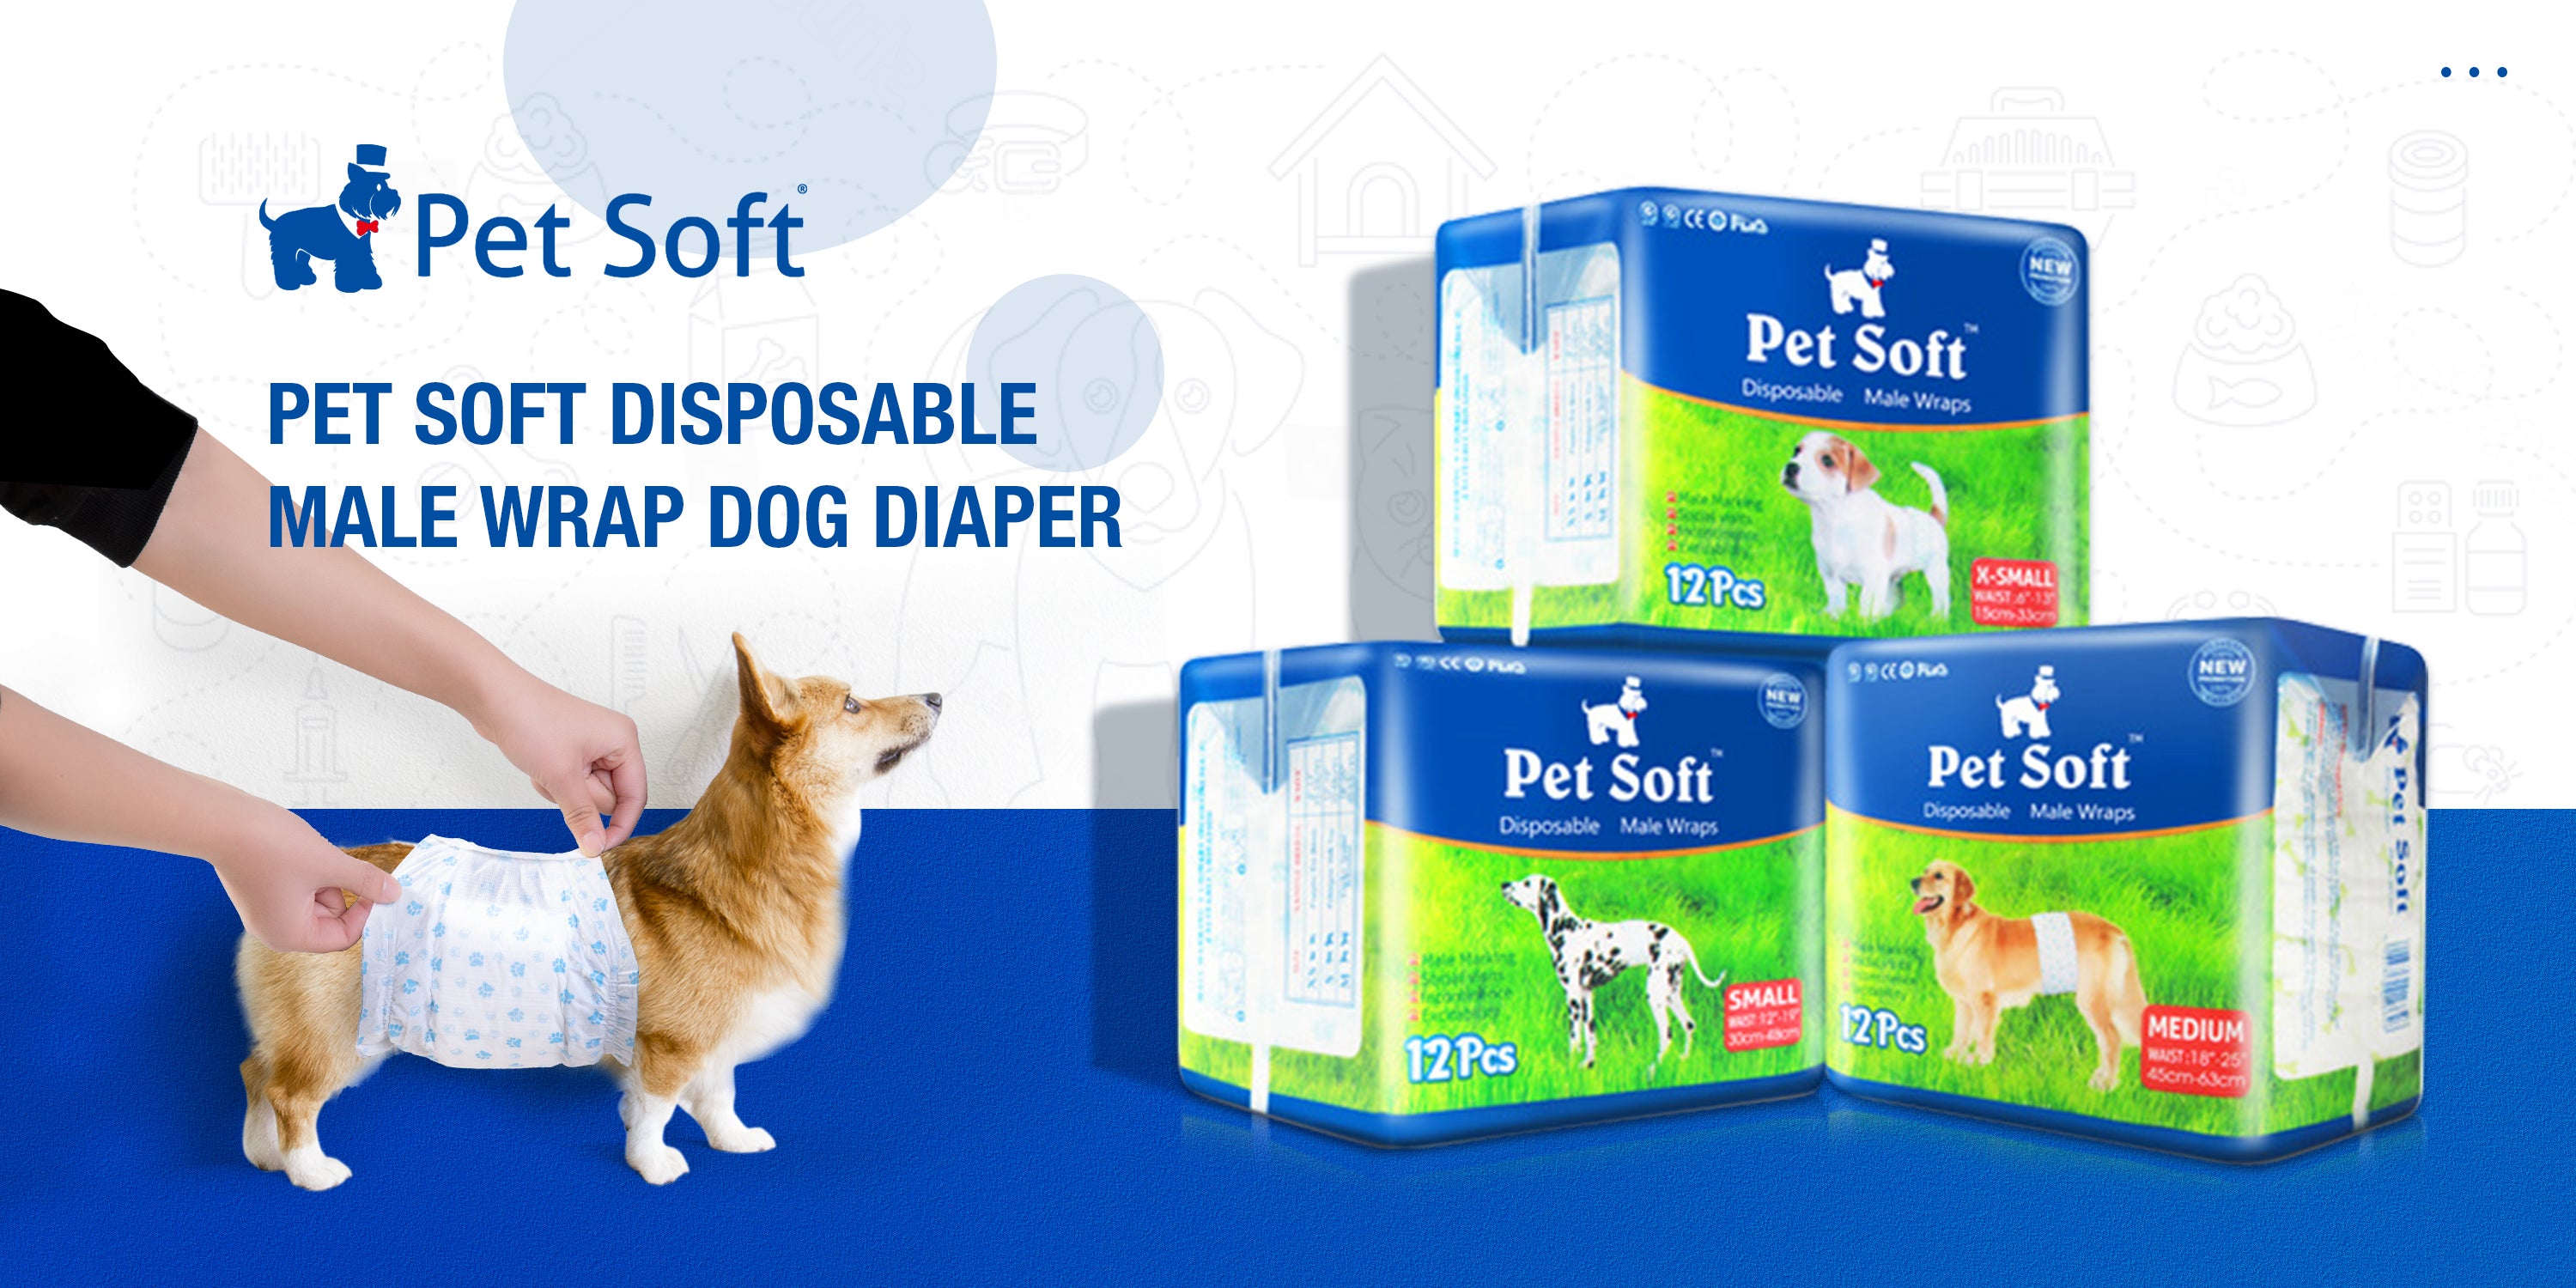 Pet Soft disposable male wrap dog diaper